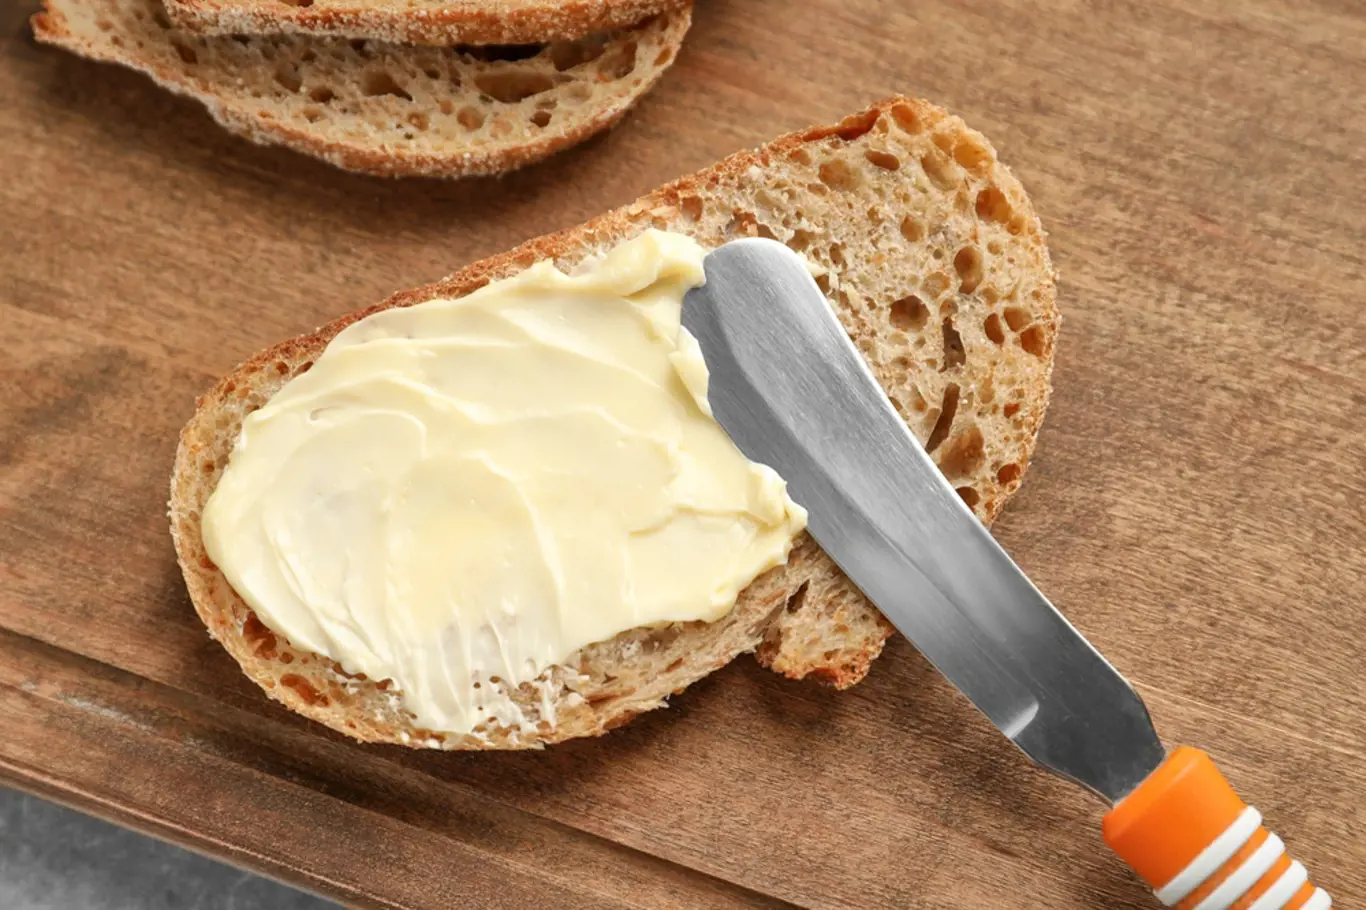 Chleba s máslem a solí, základ každé snídaně.